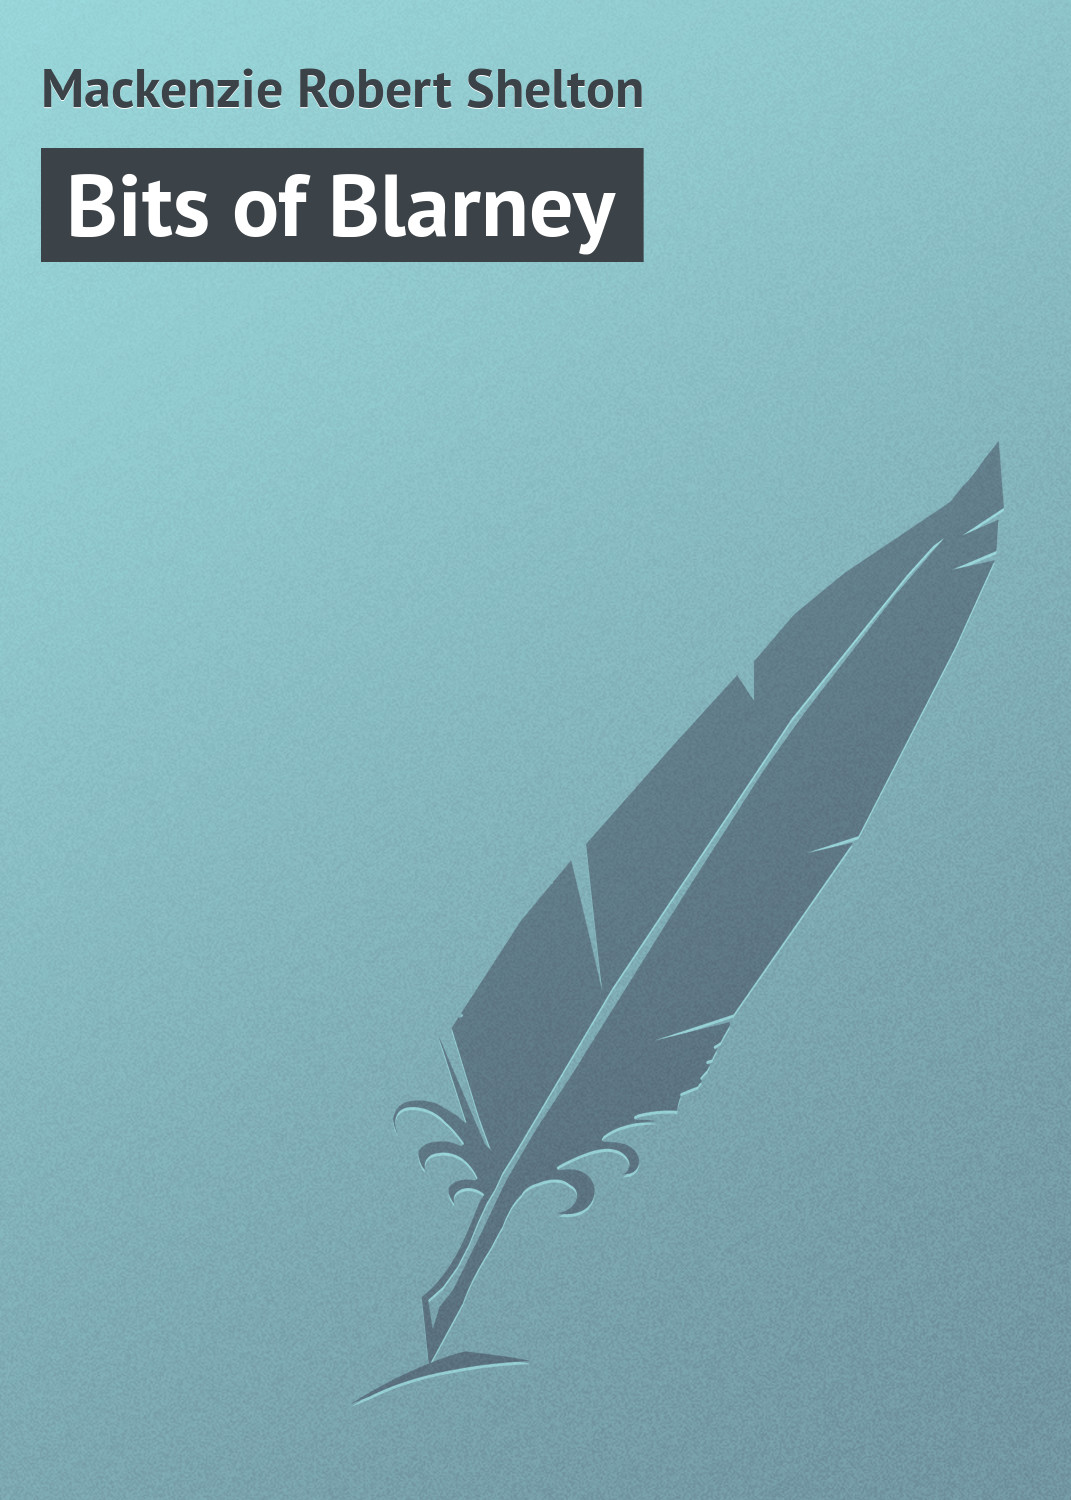 Книга Bits of Blarney из серии , созданная Robert Mackenzie, может относится к жанру Зарубежная классика, Зарубежный юмор. Стоимость электронной книги Bits of Blarney с идентификатором 23157507 составляет 5.99 руб.